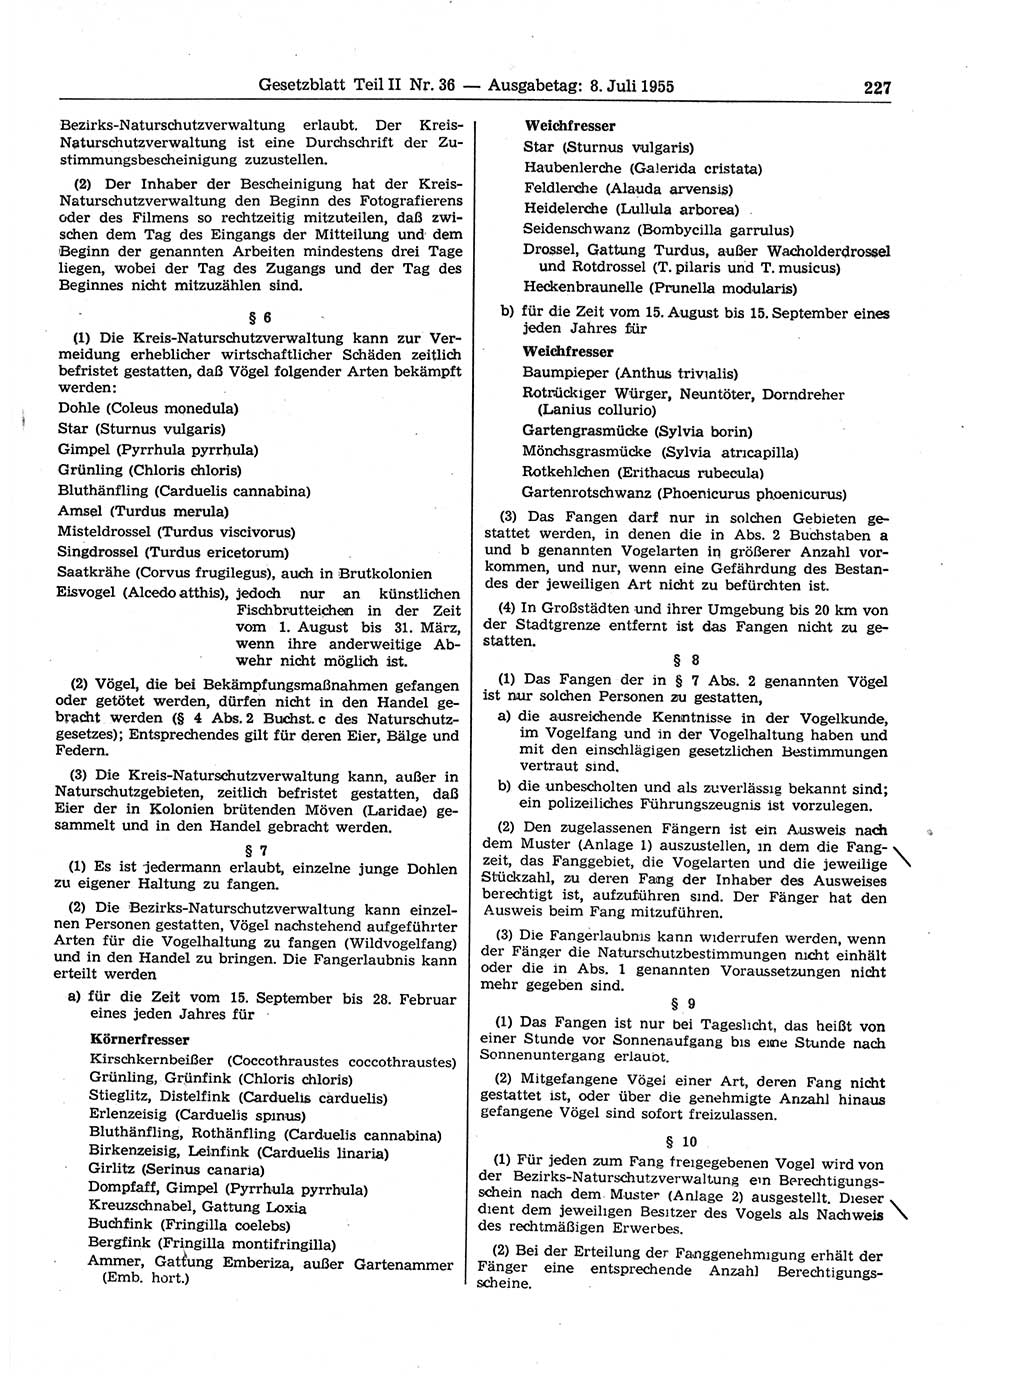 Gesetzblatt (GBl.) der Deutschen Demokratischen Republik (DDR) Teil ⅠⅠ 1955, Seite 227 (GBl. DDR ⅠⅠ 1955, S. 227)